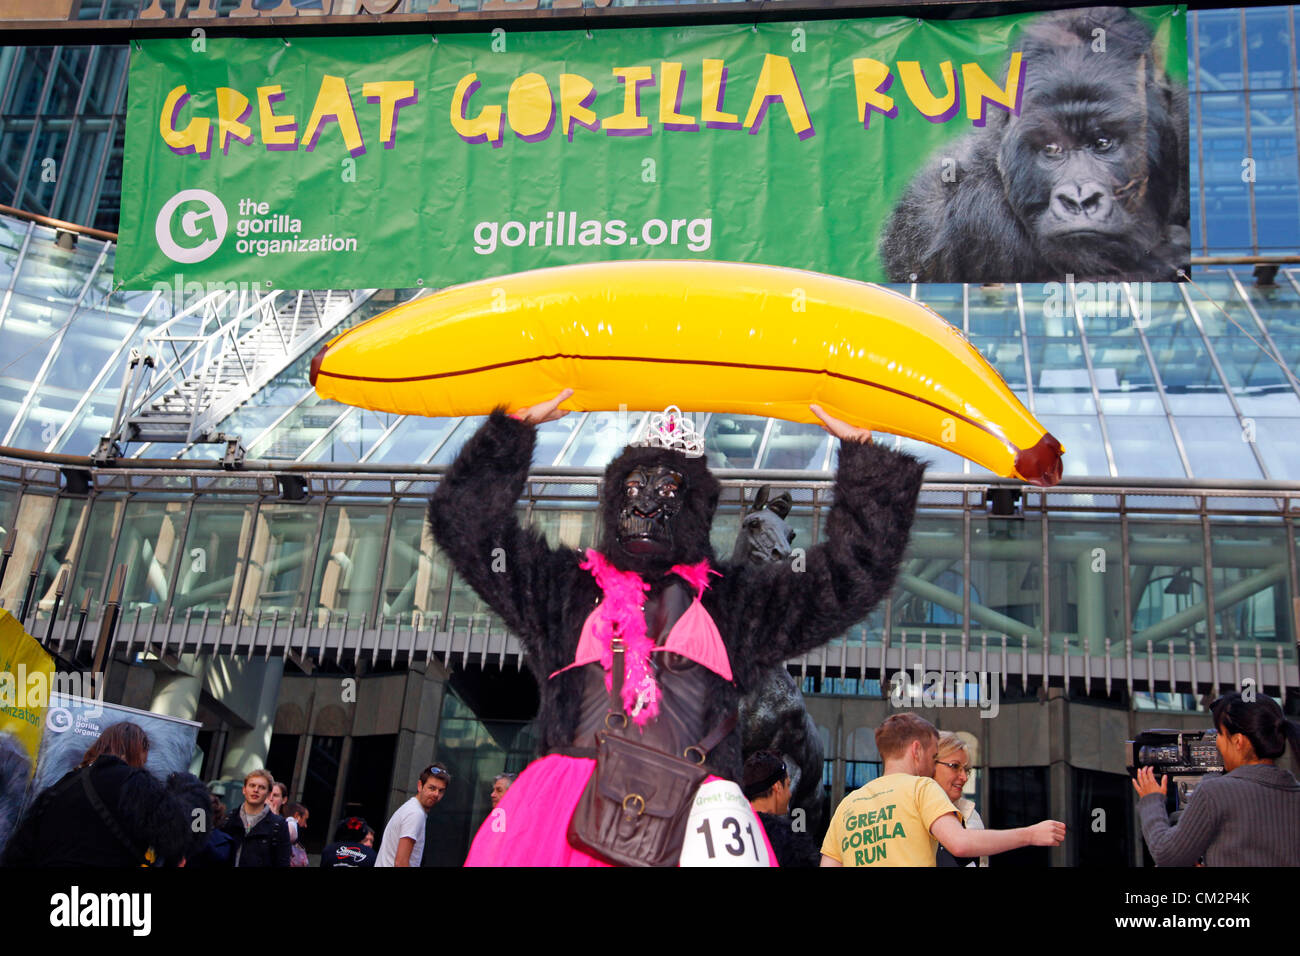 London, UK. 22. September 2012. Großen Gorilla laufen 2012 ein Charity-Lauf verkleidet als Gorillas, die Berggorillas zu speichern Stockfoto